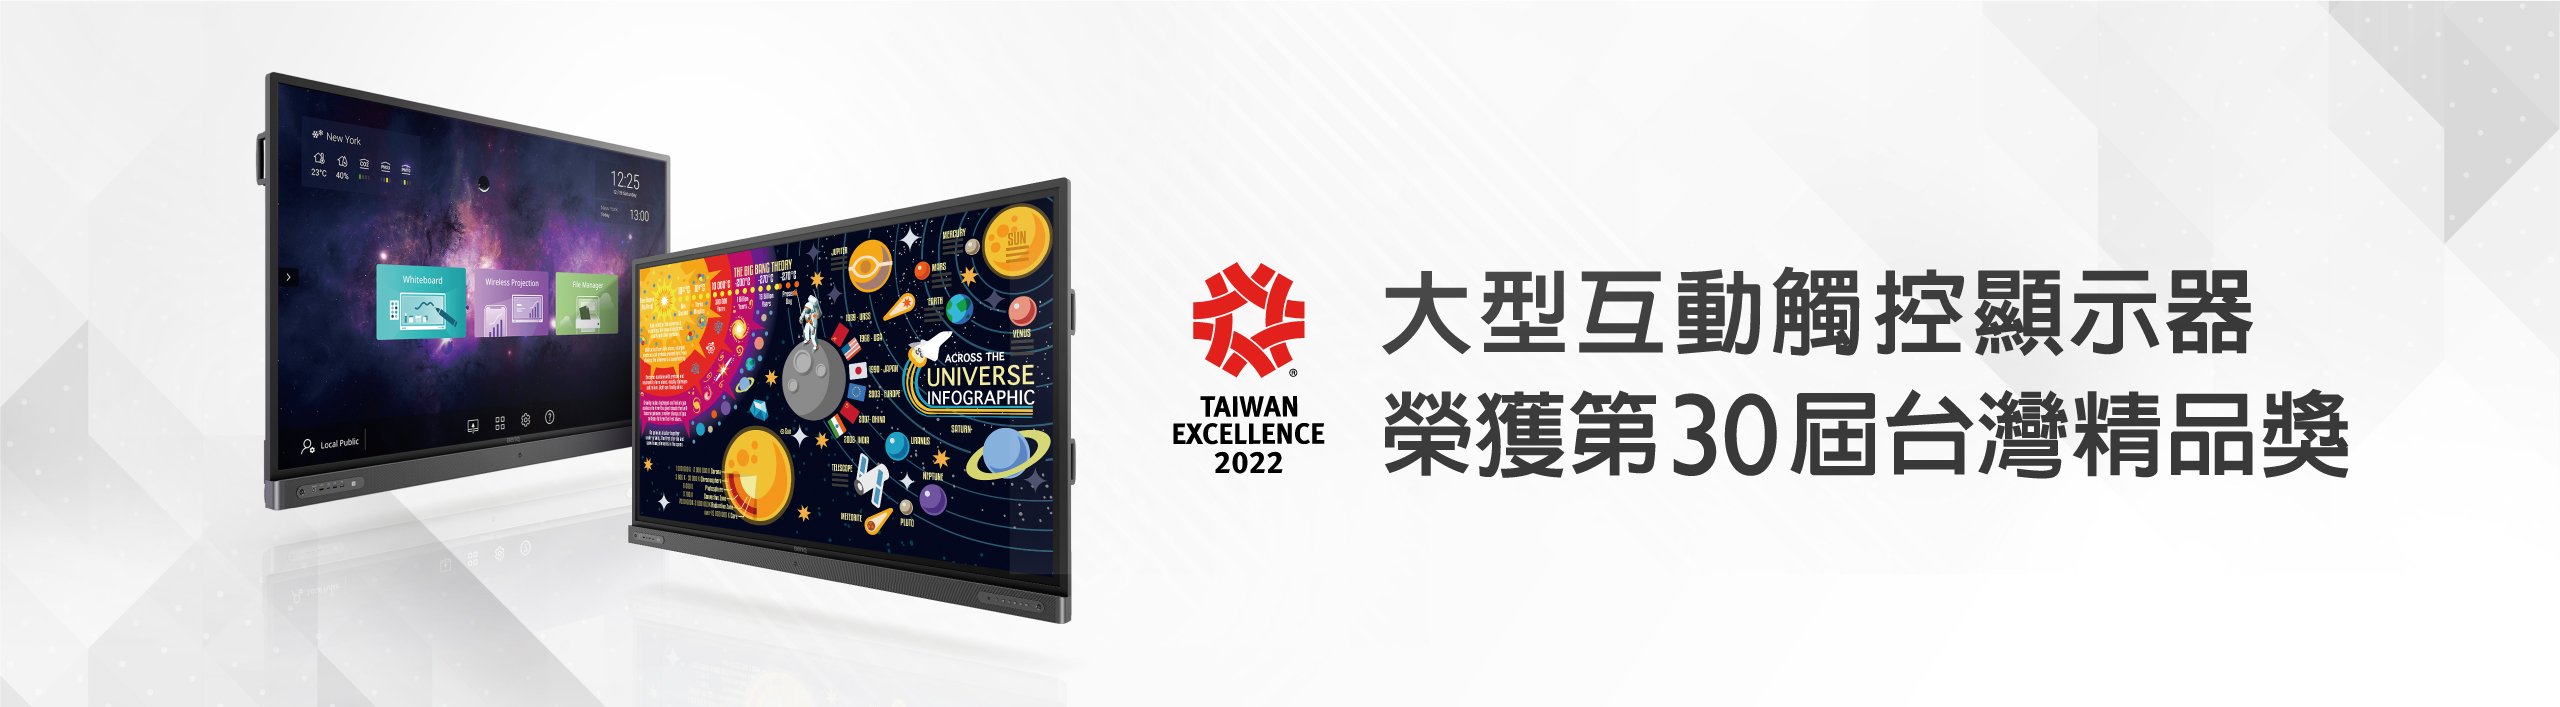 大型互動觸控顯示器榮獲台灣精品獎